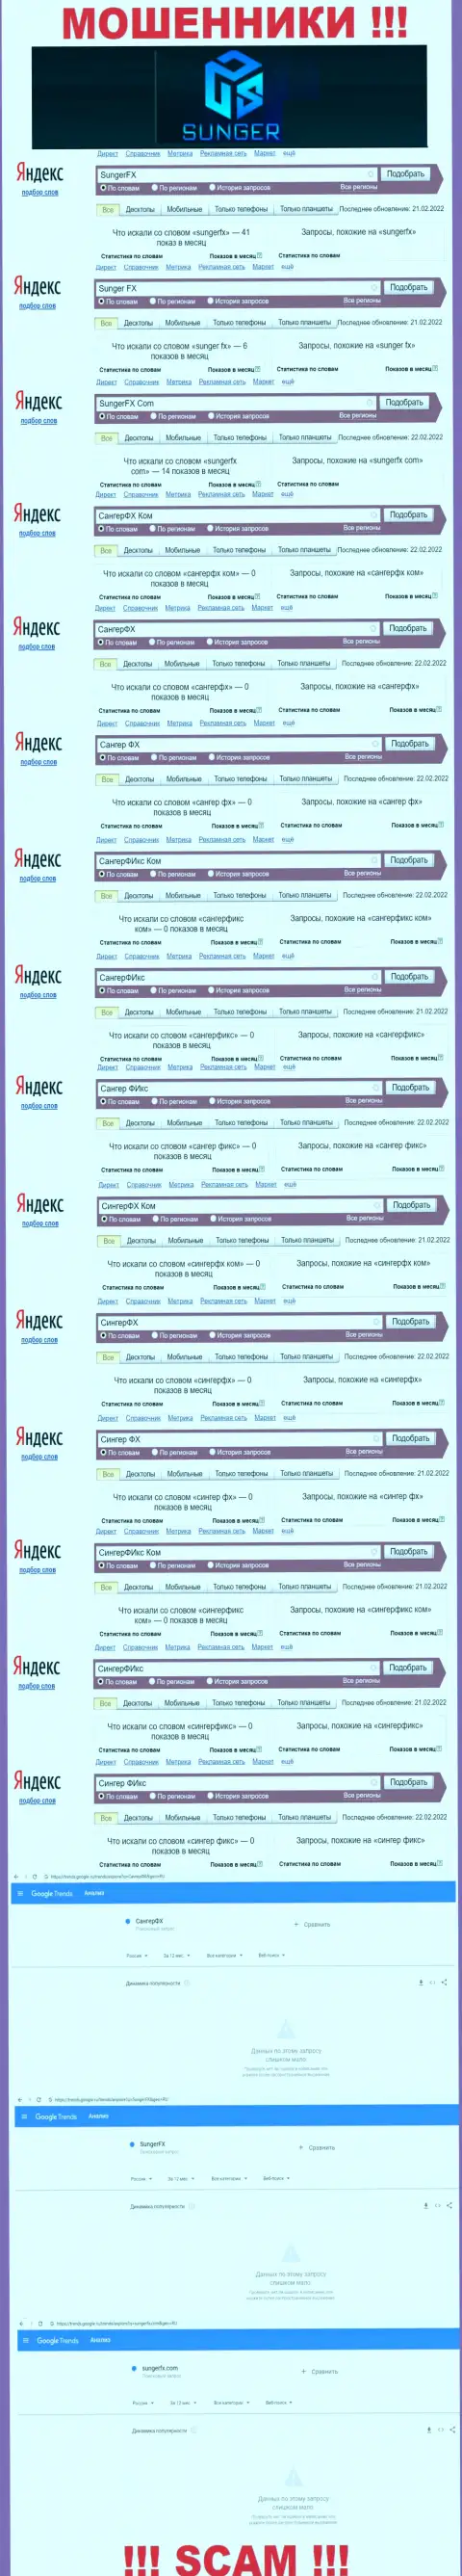 SungerFX Com - это МОШЕННИКИ, сколько раз искали в поисковиках глобальной internet сети данную организацию